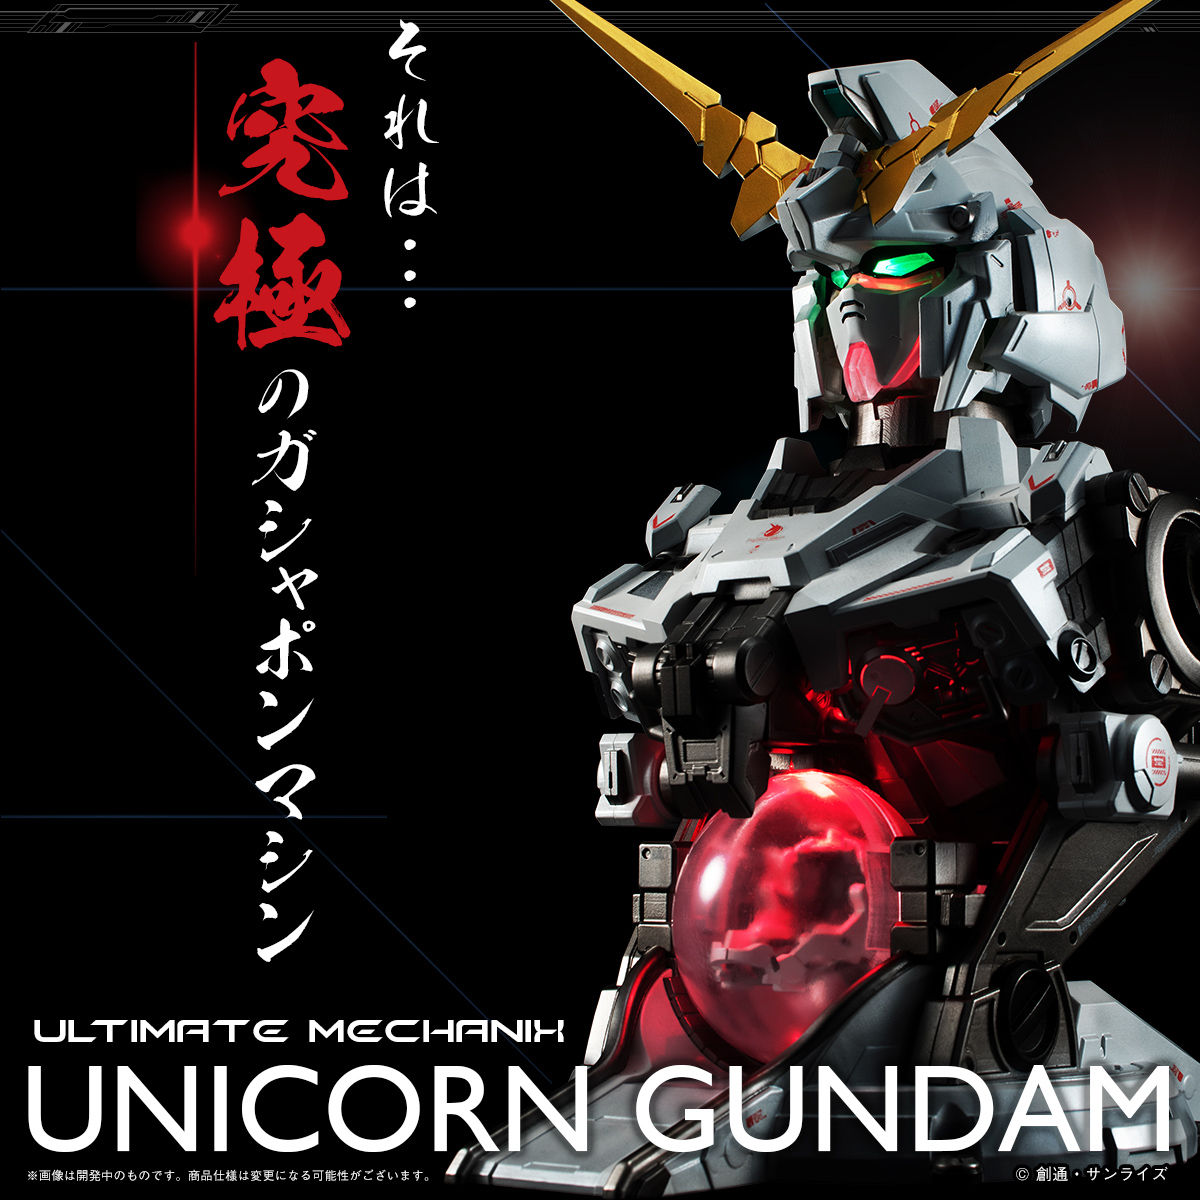 Ultimate Mechanix Unicorn Gundam 機動戦士ガンダムuc ユニコーン 趣味 コレクション バンダイナムコグループ公式通販サイト